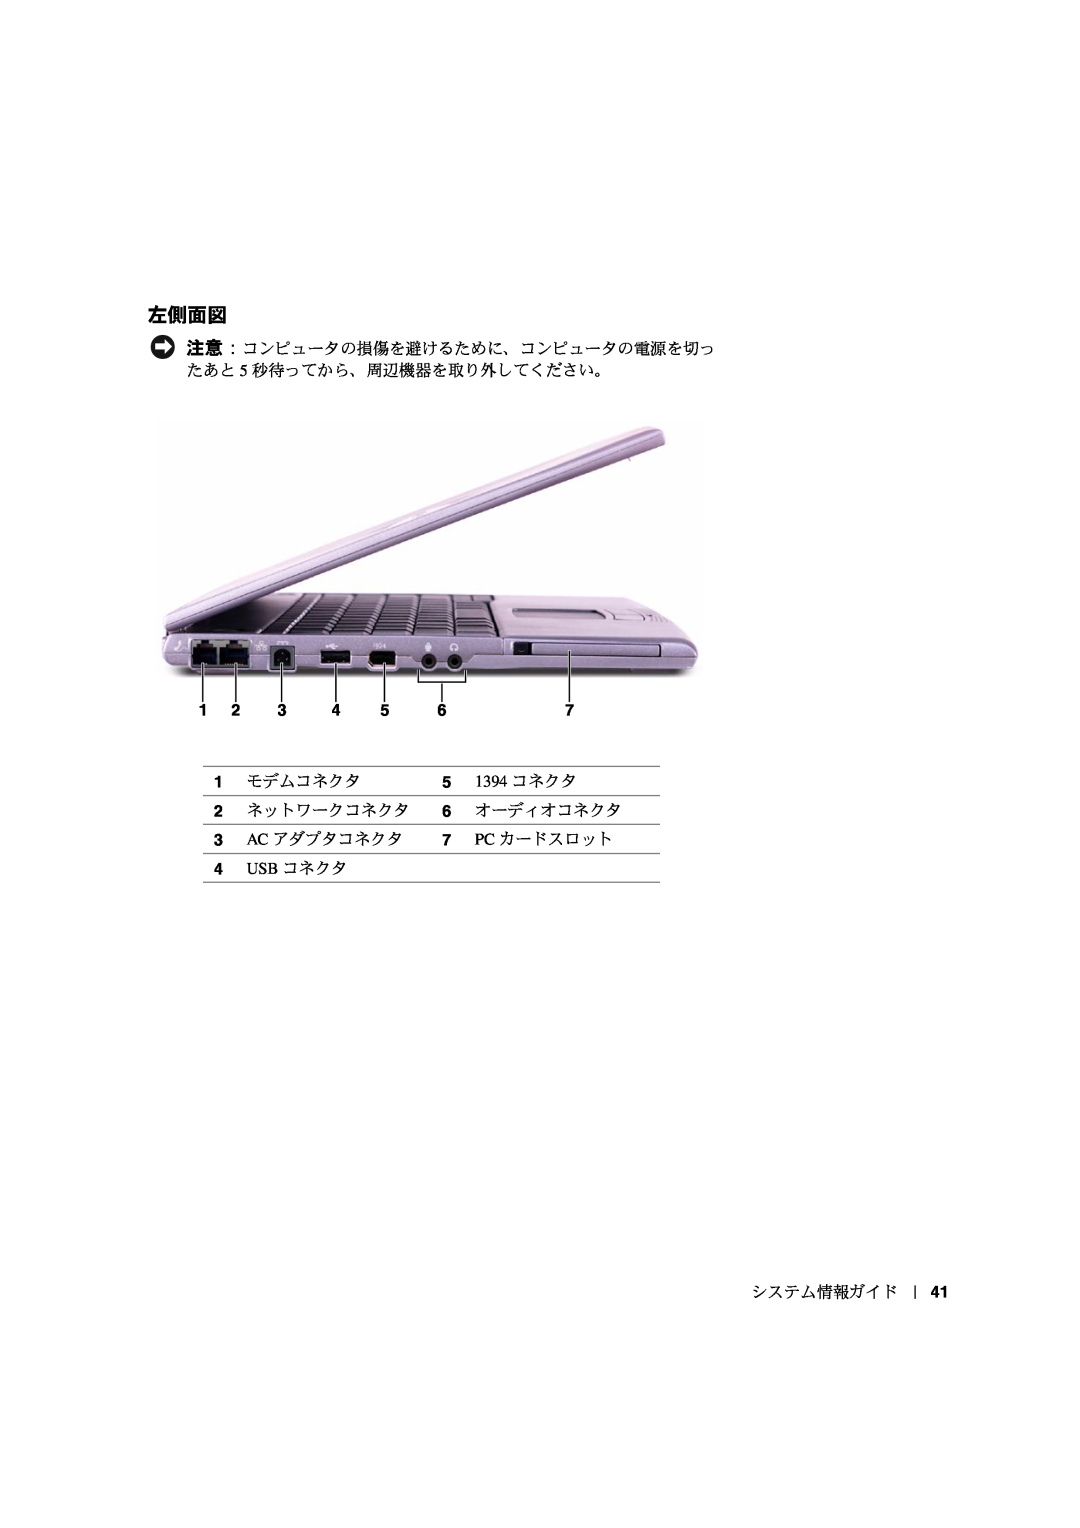 Dell PP03S manual 1394 ý, ýD¡þ ý, AC %£¢ý, PC ‡nÀD¡, USB ý 